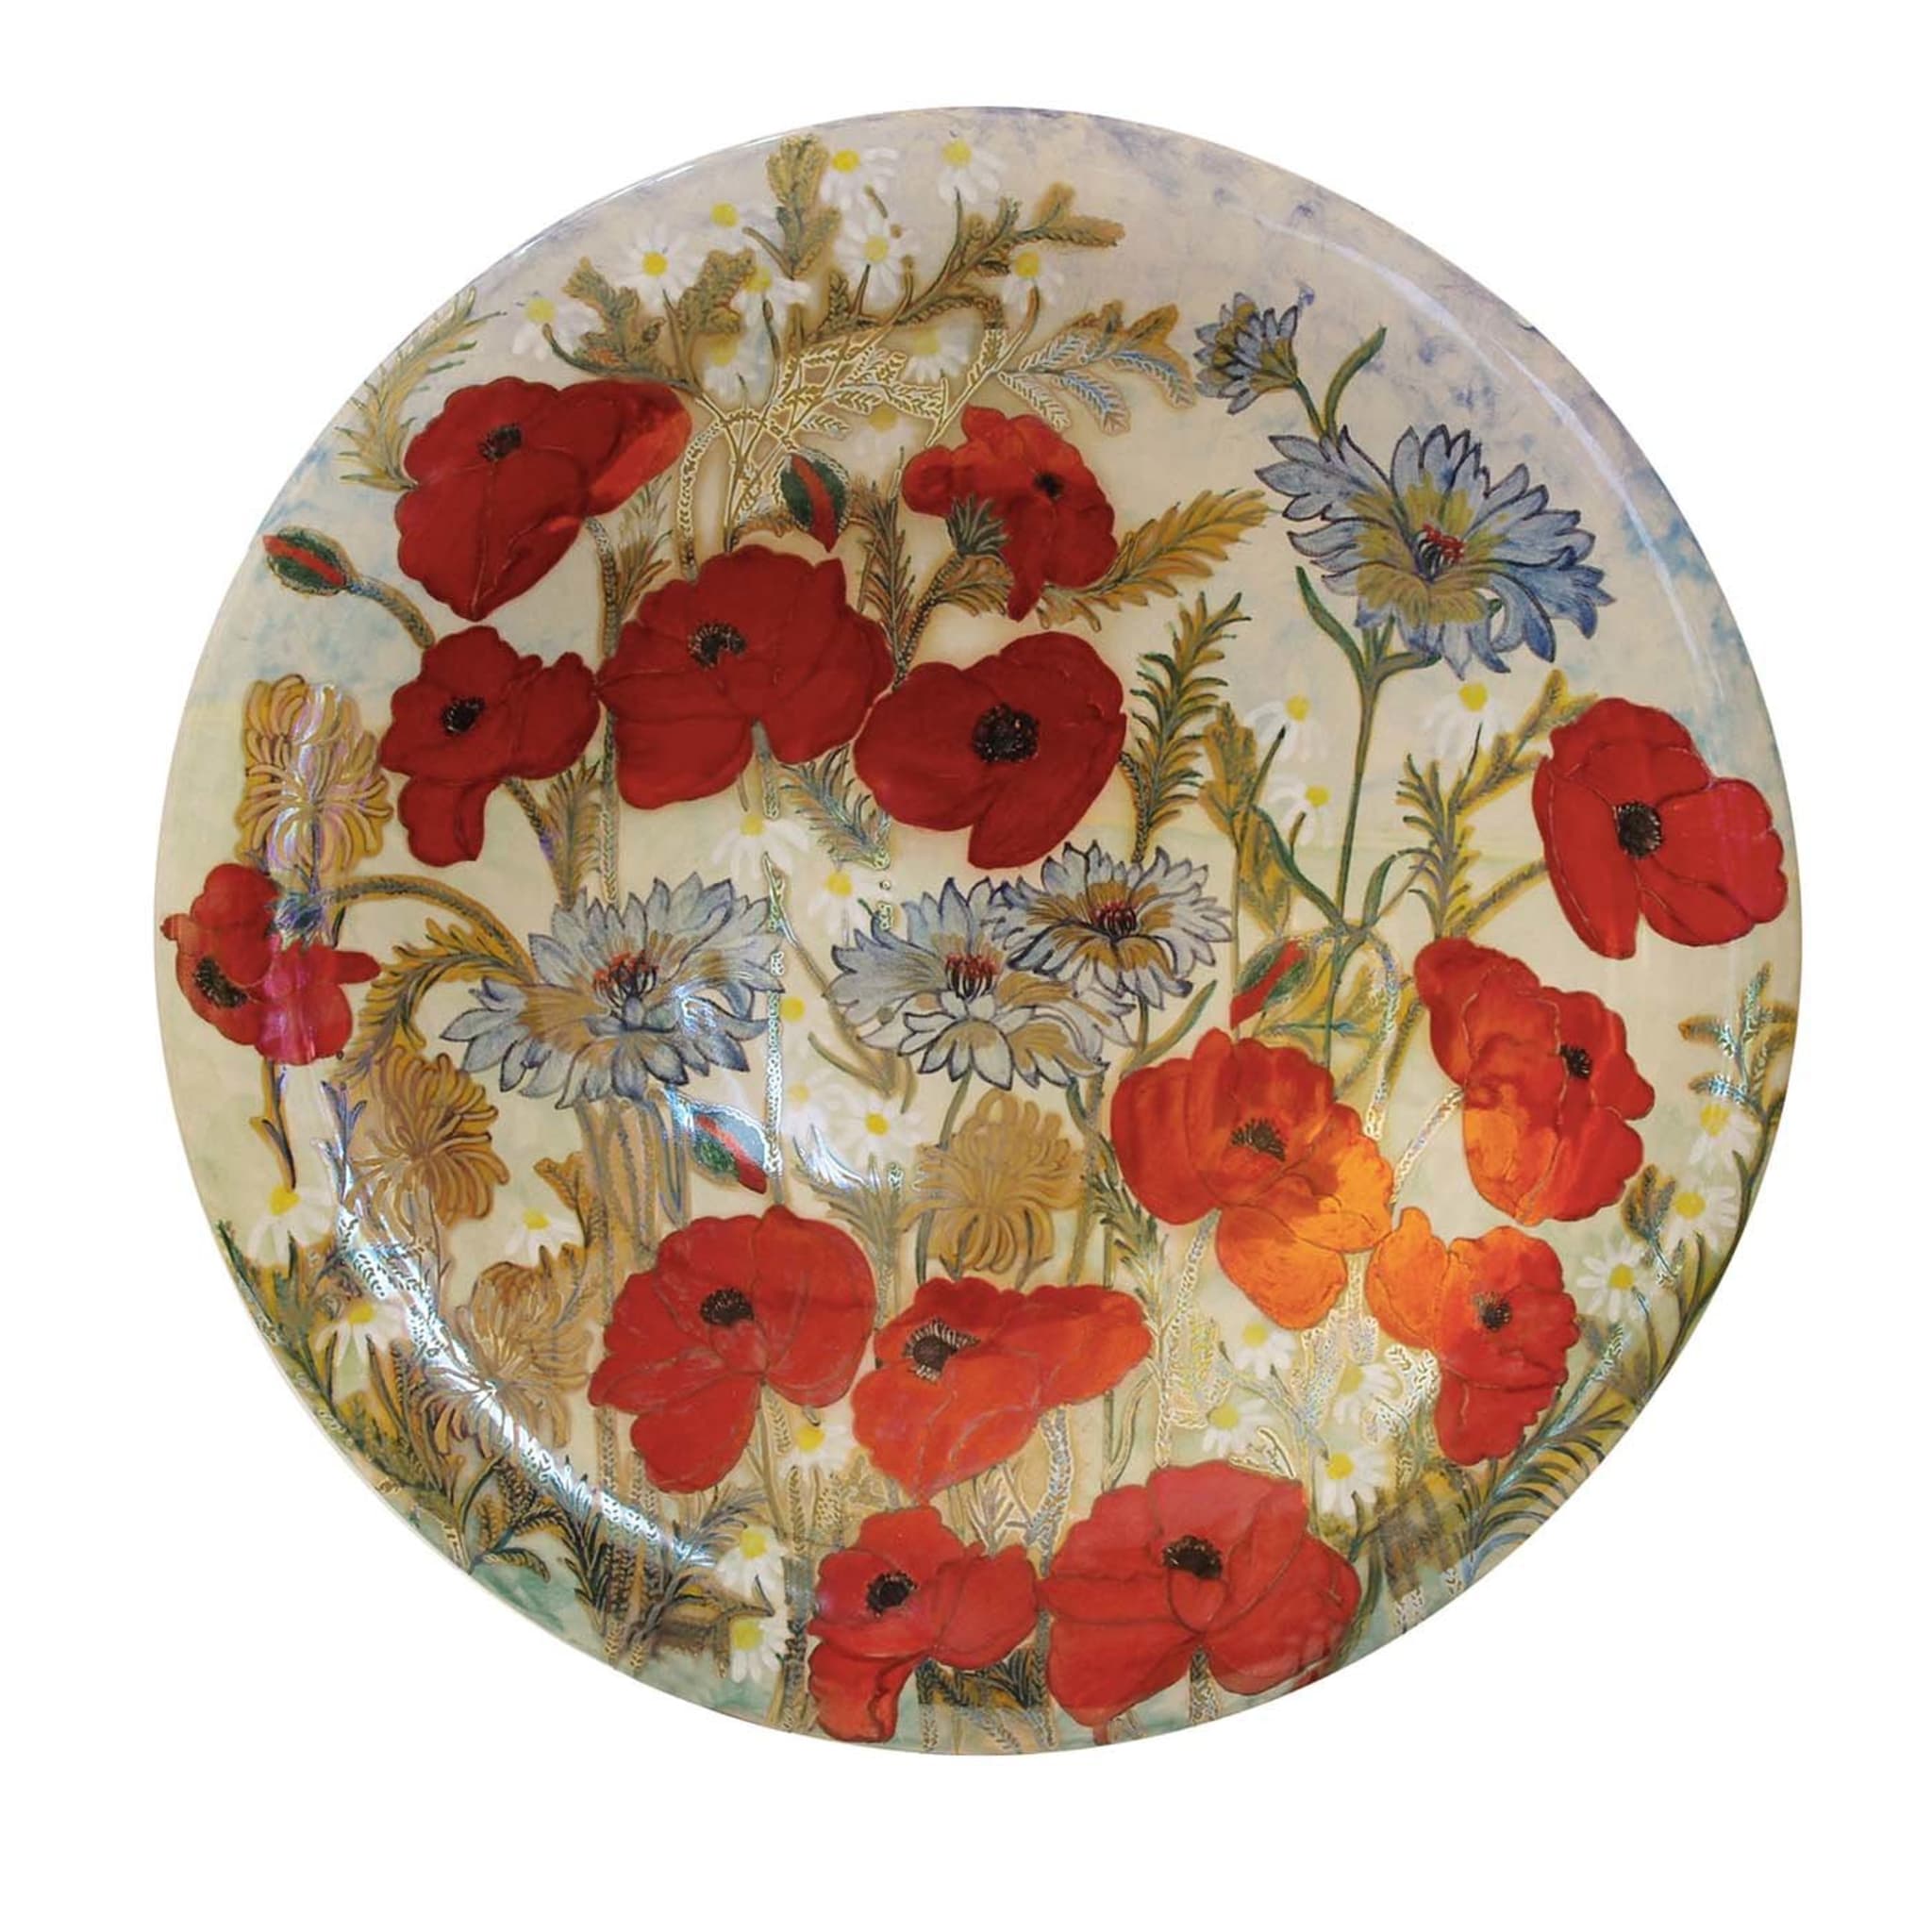 Assiette décorative avec fleurs de pavot - Vue principale